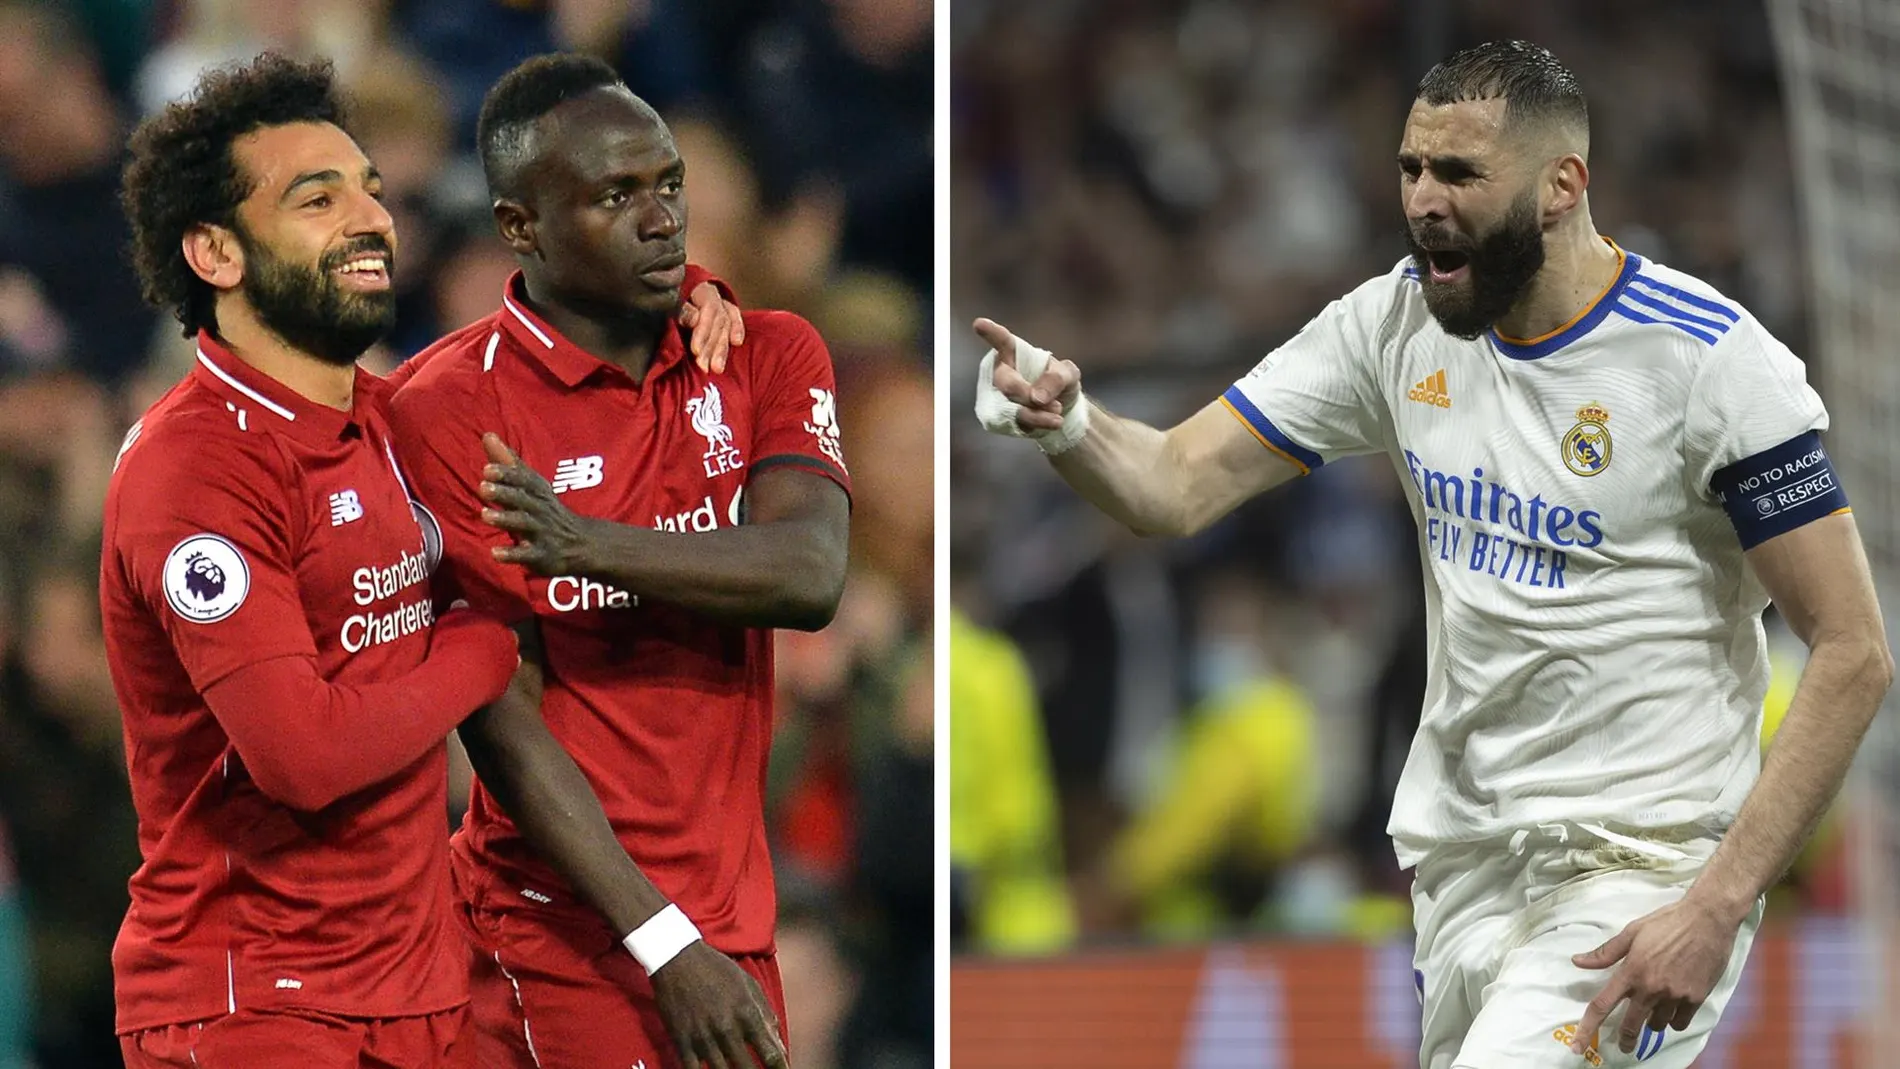 Liverpool - Real Madrid: ¿Cuándo y dónde se juega la final de la Champions League?